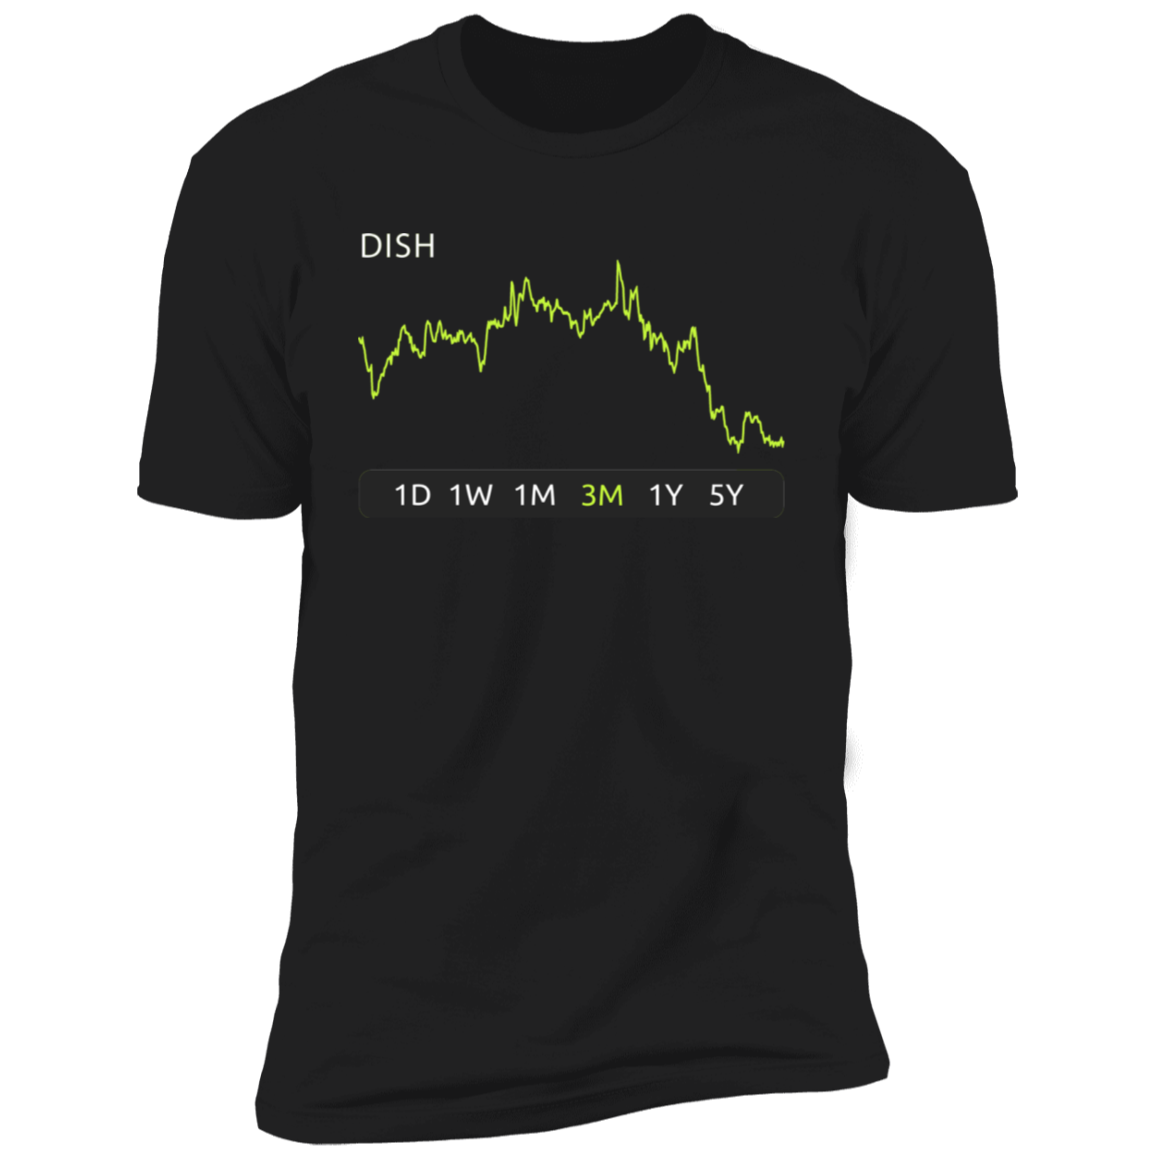 DISH Stock 3m Premium T-Shirt